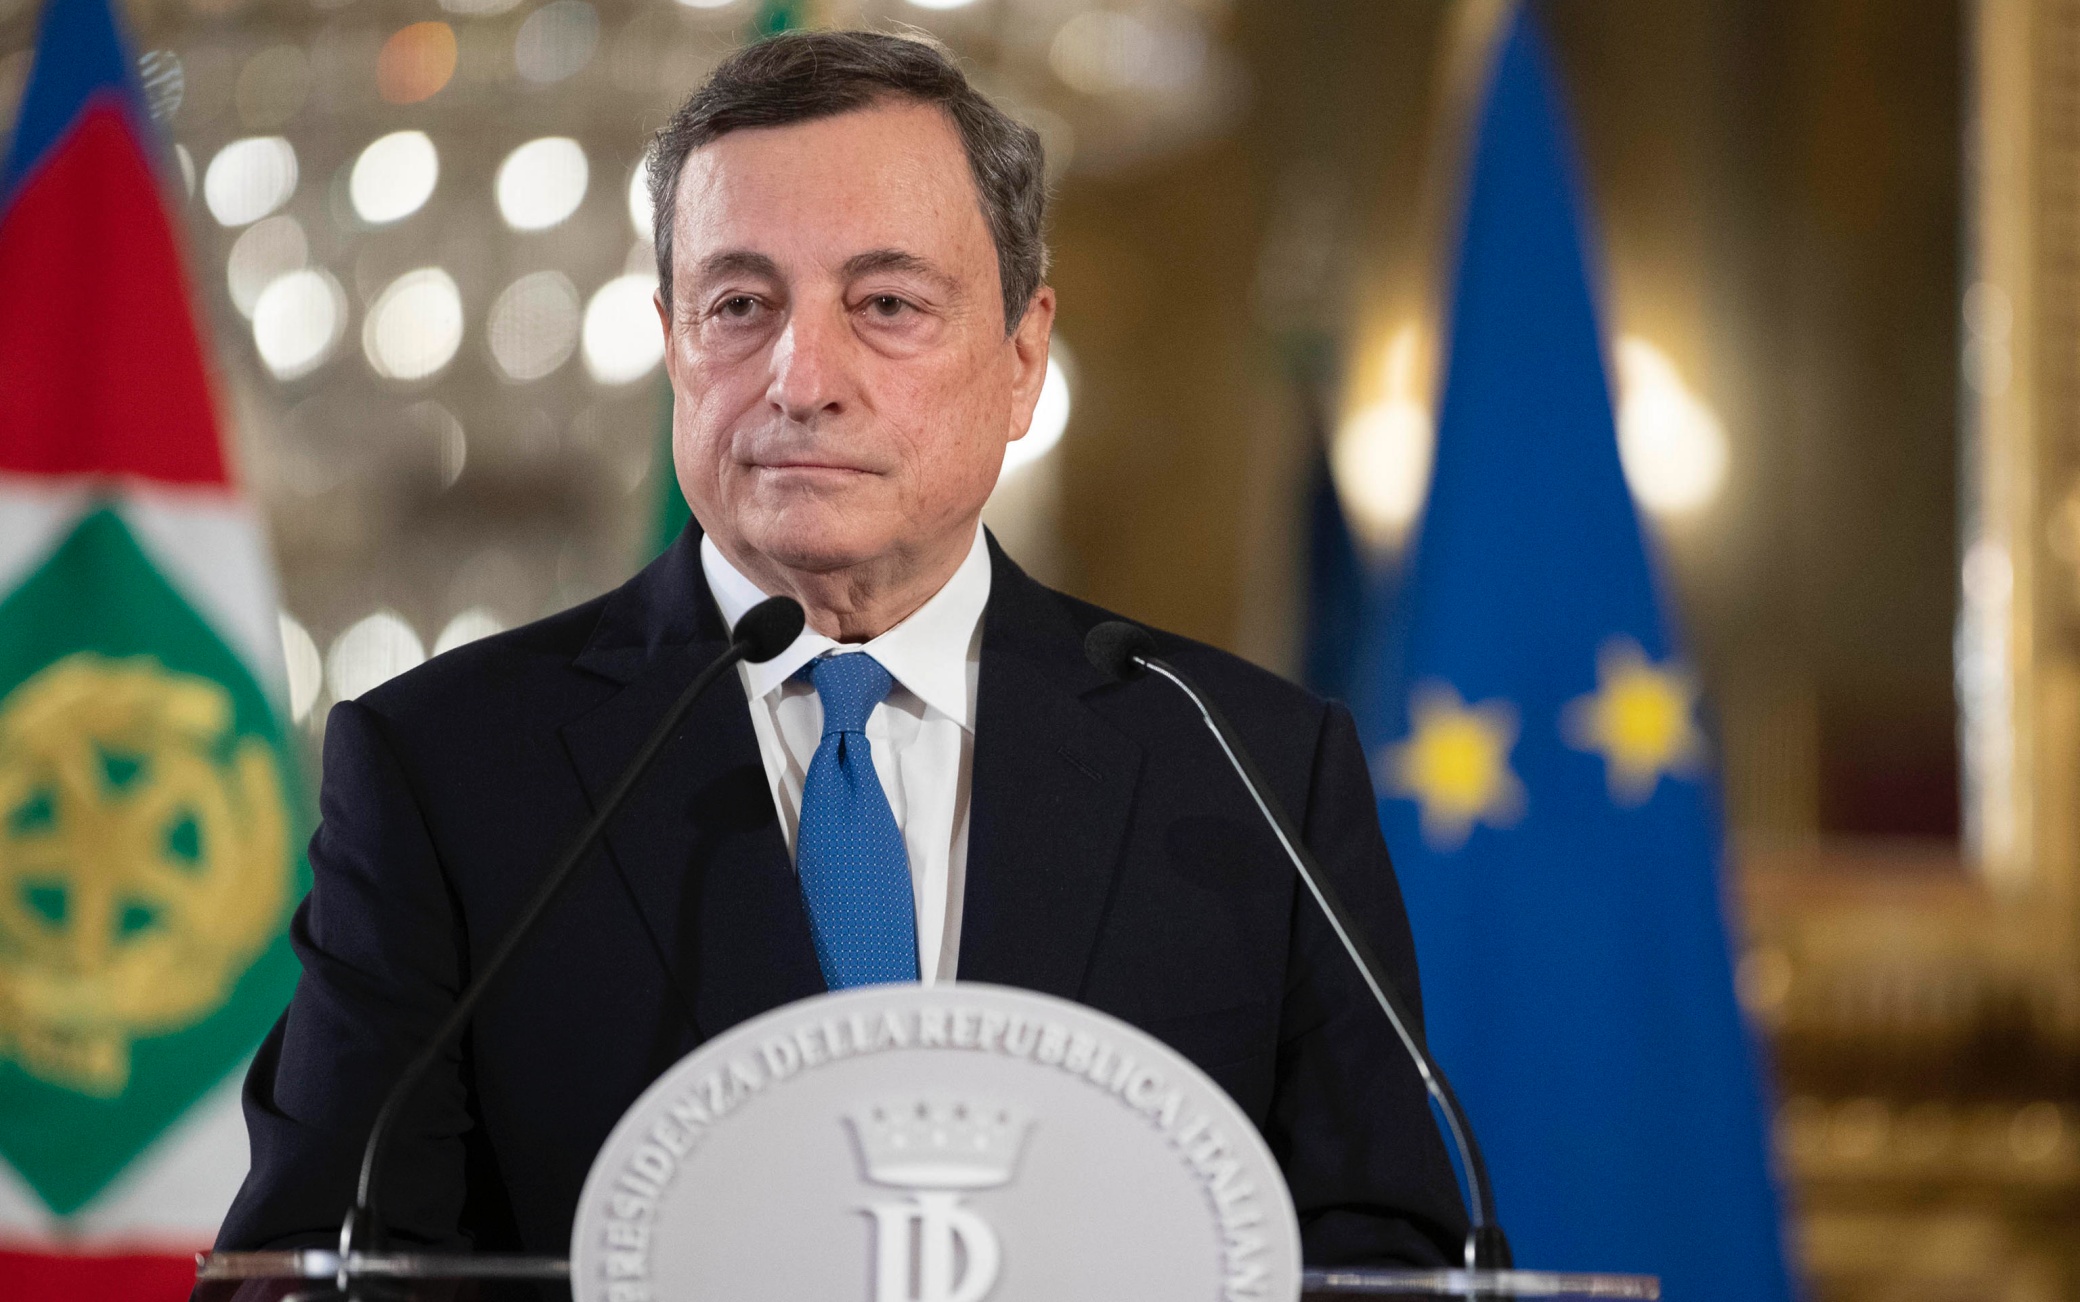 Da Draghi con sobrietà una lezione di politica e democrazia